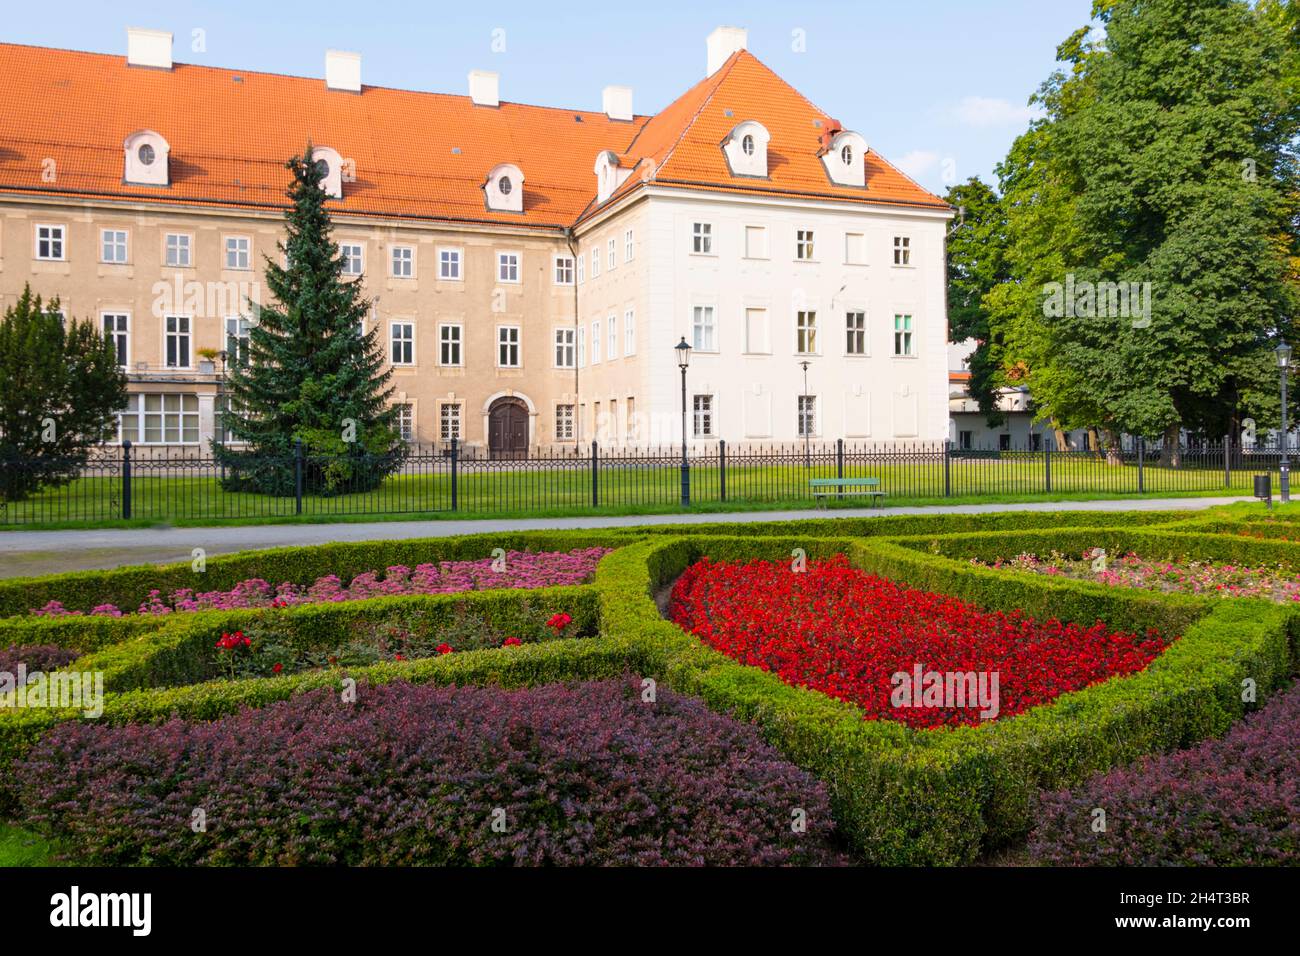 Schaffgotsch's Palace, Plac Zdrojowy, Cieplice Śląskie-Zdrój, Jelenia Gora, Poland Stock Photo